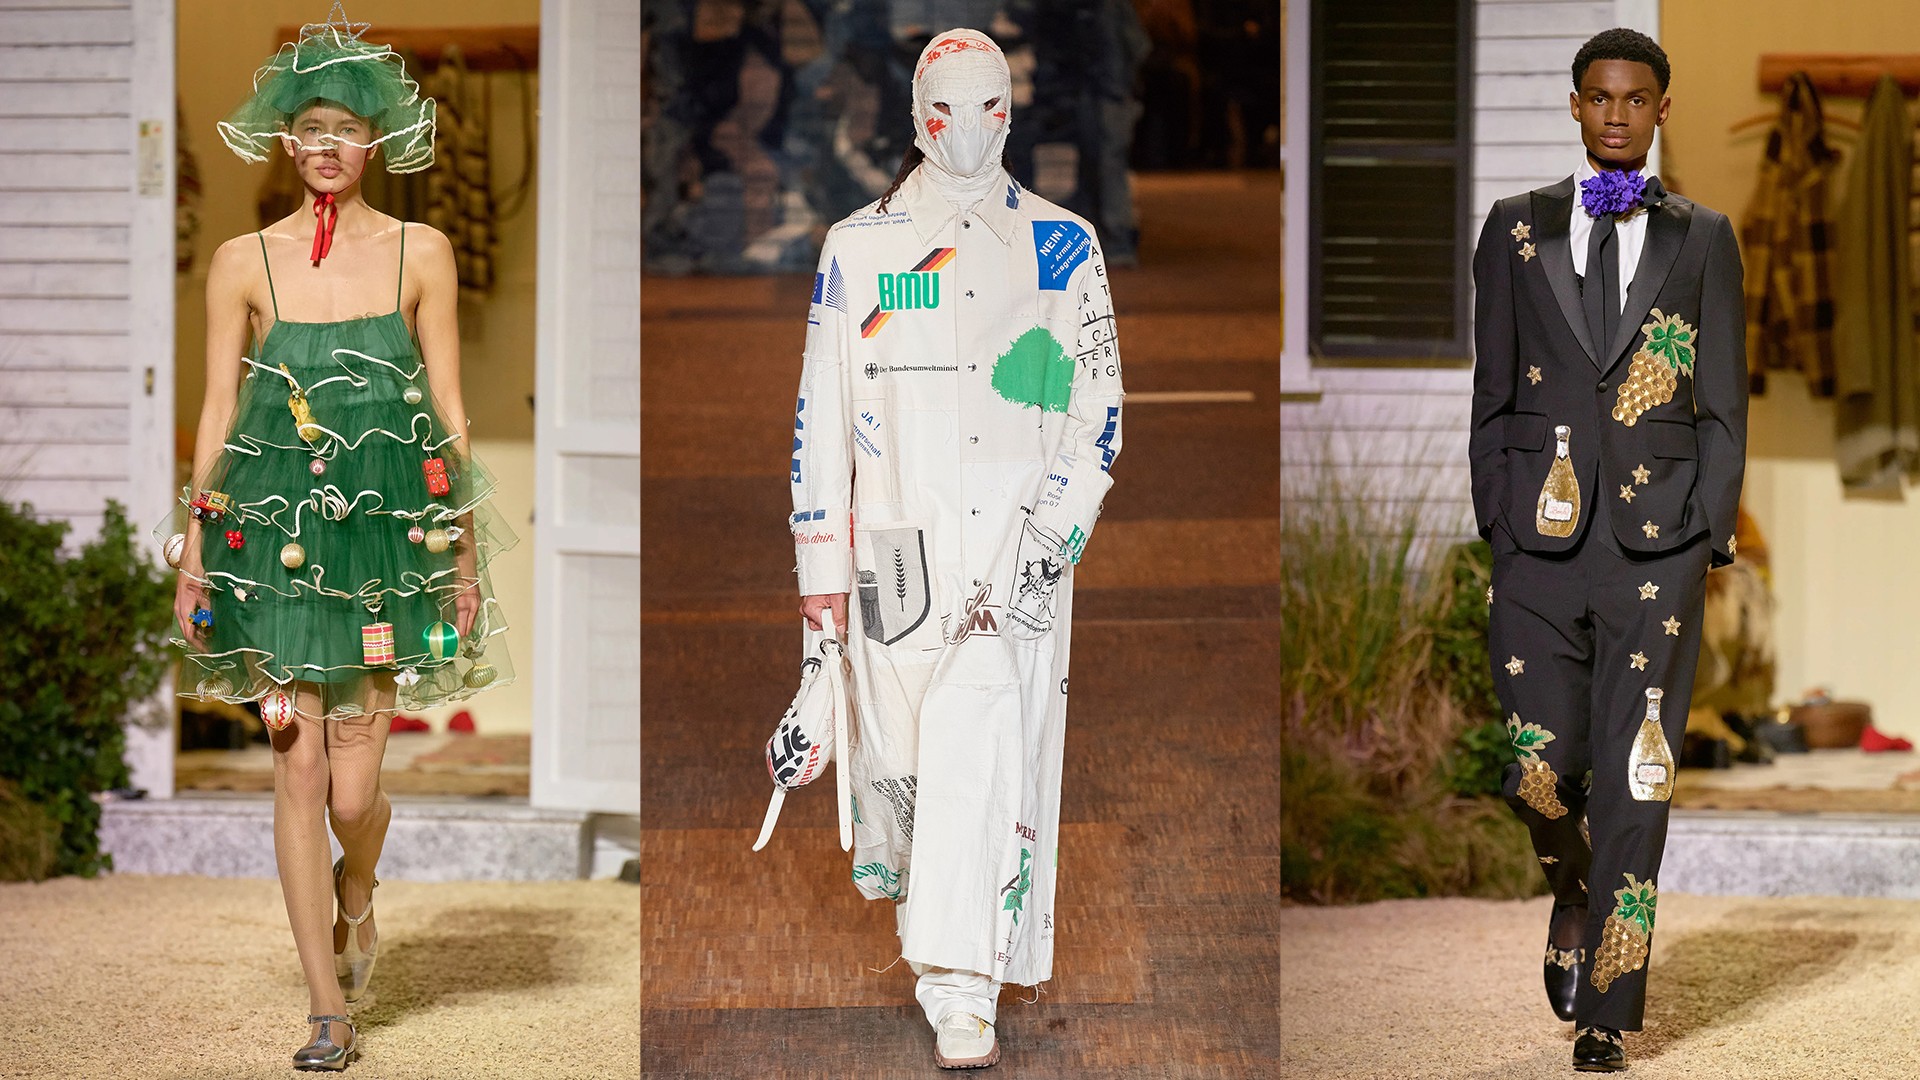 Louis Vuitton, abiti adolescenti contro le convenzioni - Style